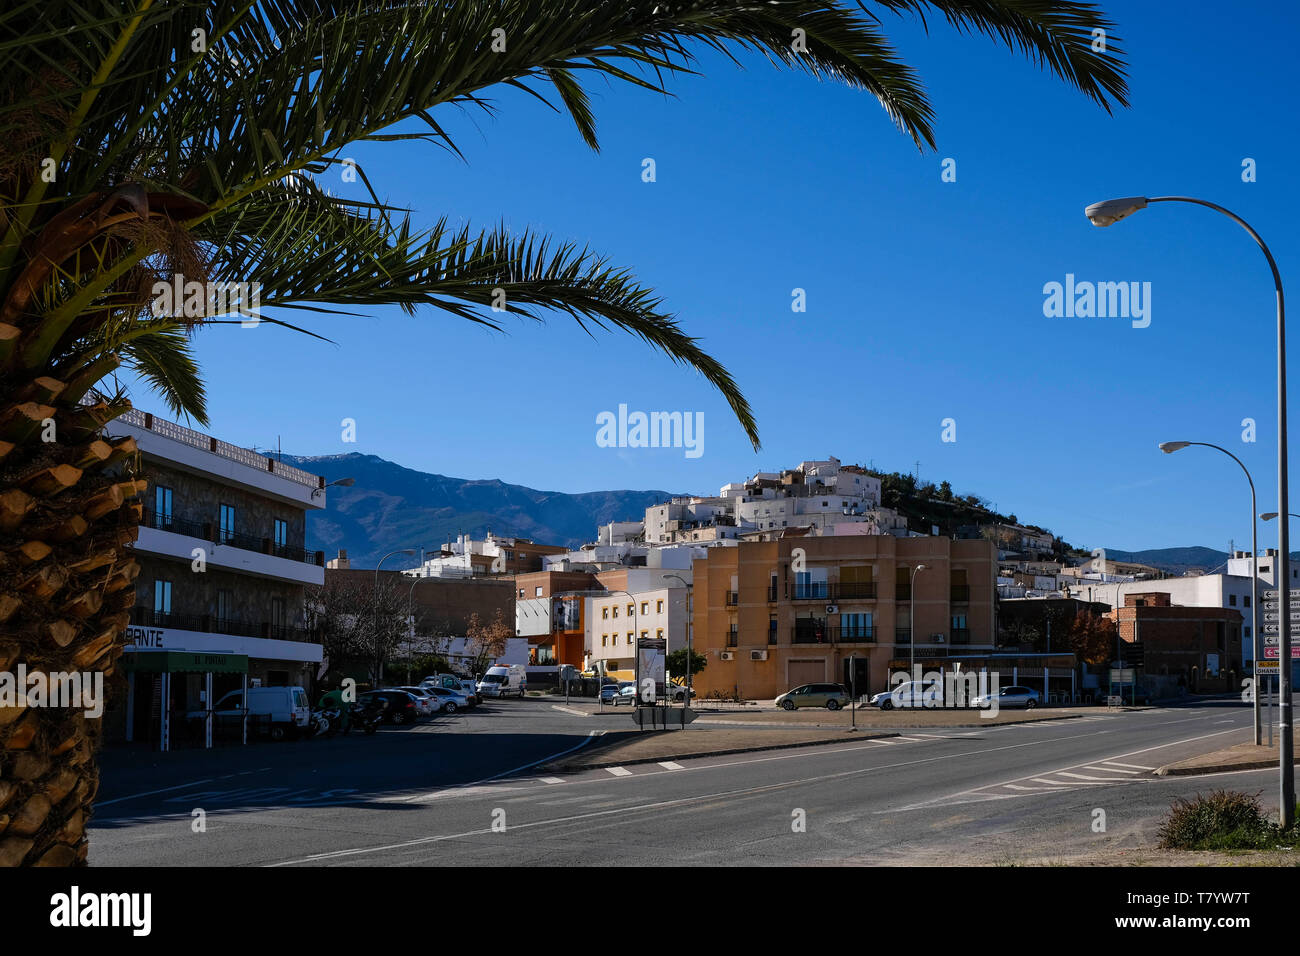 Una vista di un piccolo paese chiamato Abla in Almeria, Spagna. Foto Stock